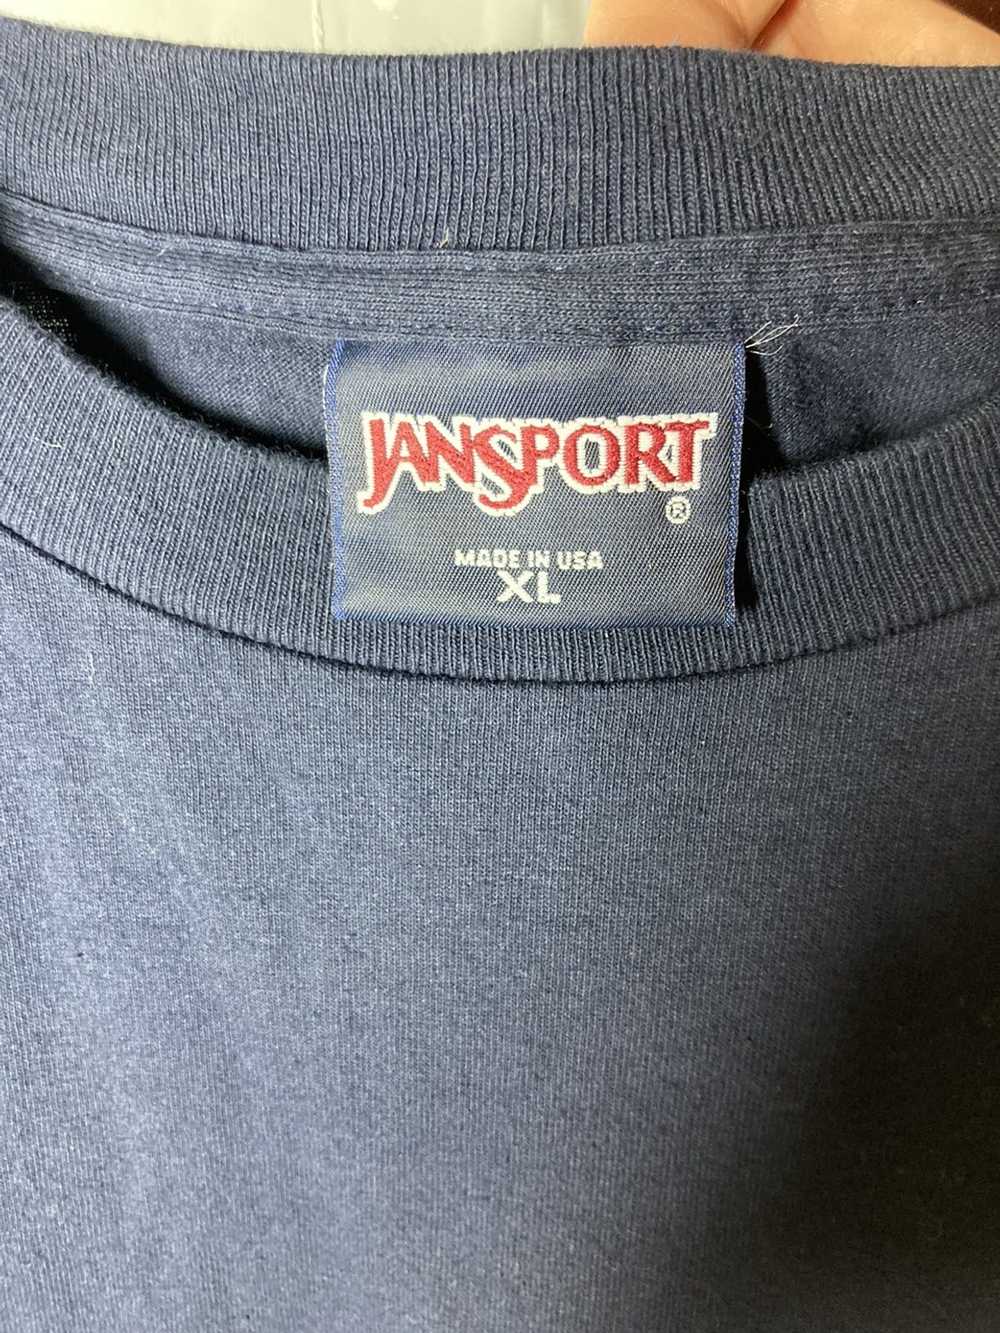 Jansport × Vintage Vintage Jansport t shirt made … - image 4